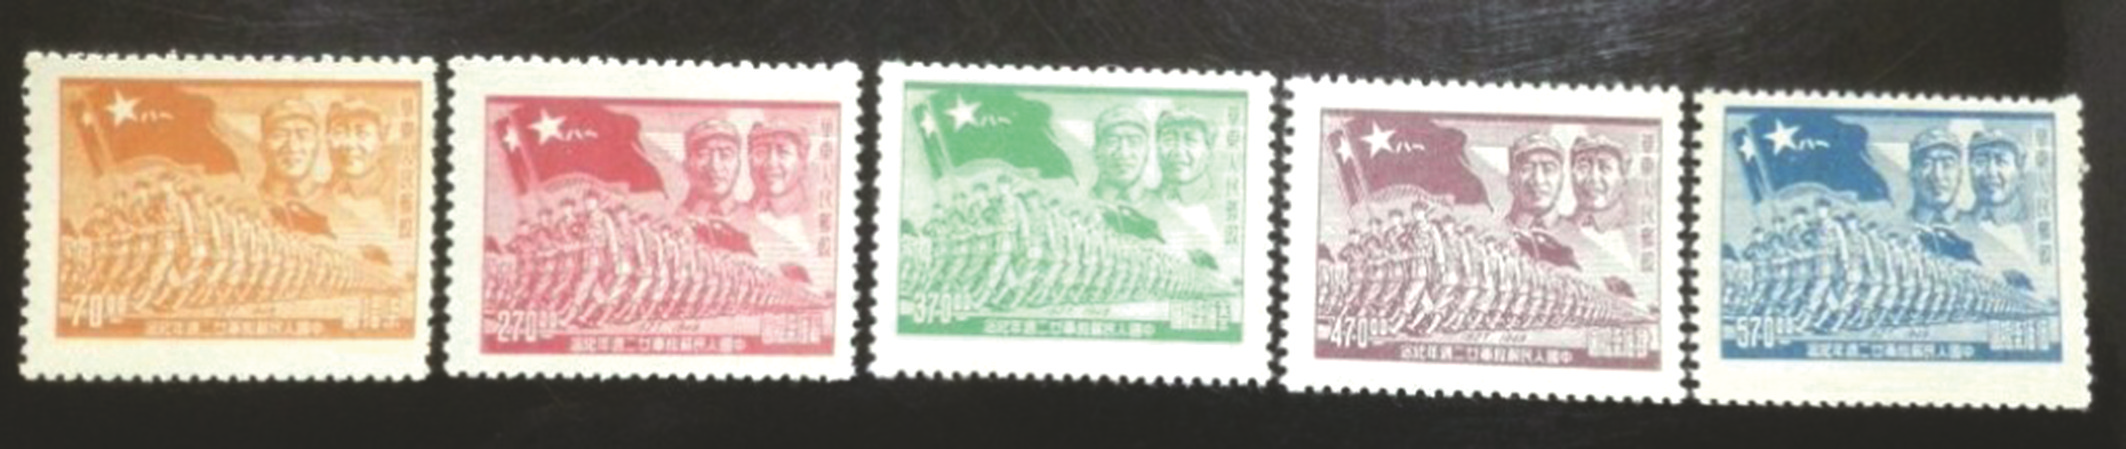 《中国人民解放军廿二周年纪念》邮票